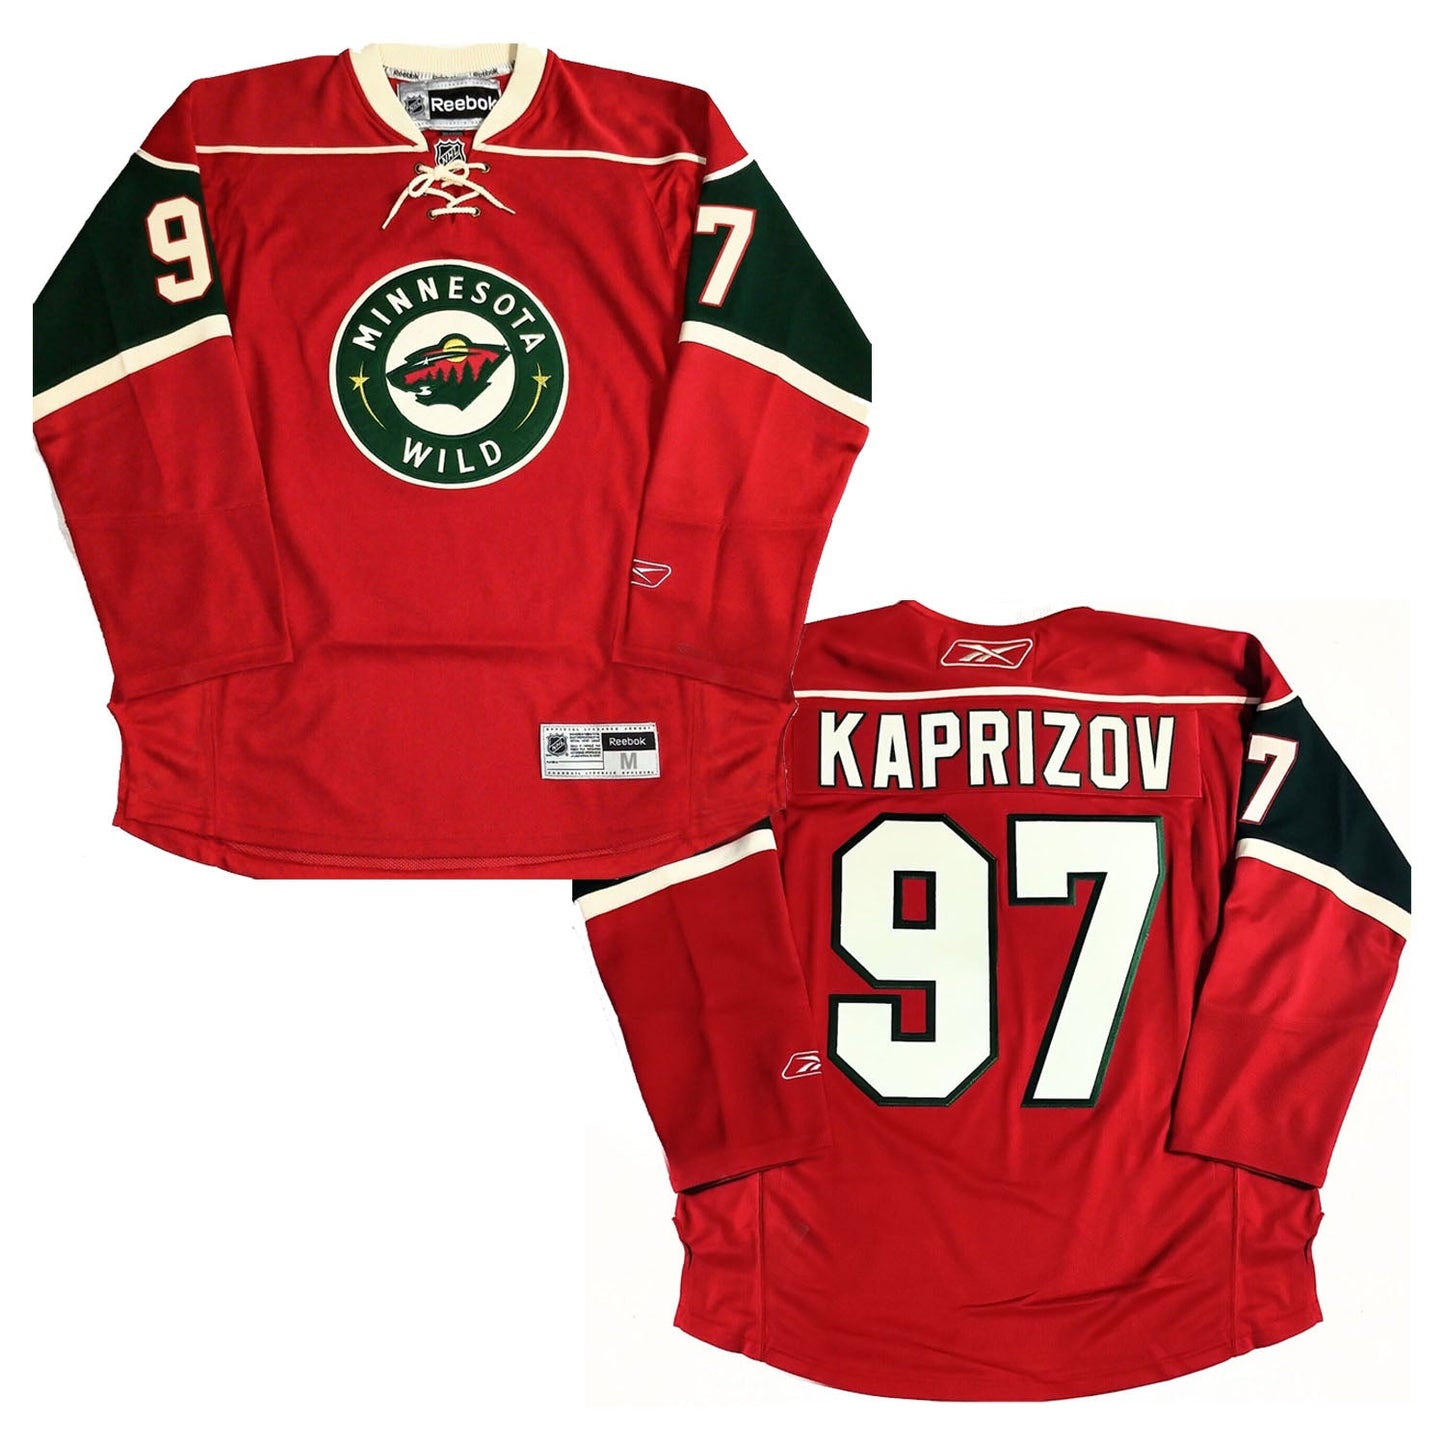 NHL Kirill Kaprizov Minnesota Wilds 97 Jersey